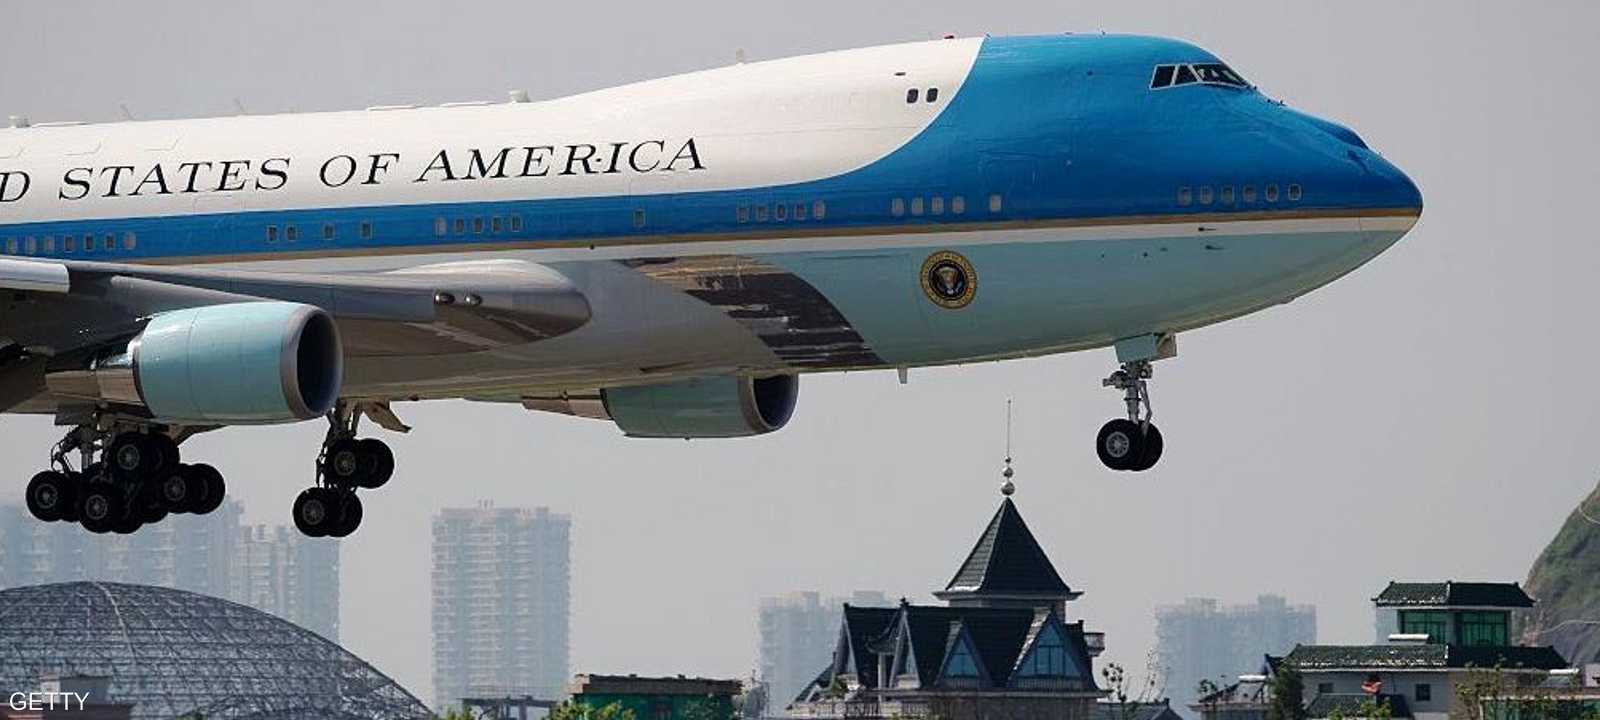 بلغت كلفة الطائرة الرئاسية الجديدة أكثر من 4 مليارات دولار